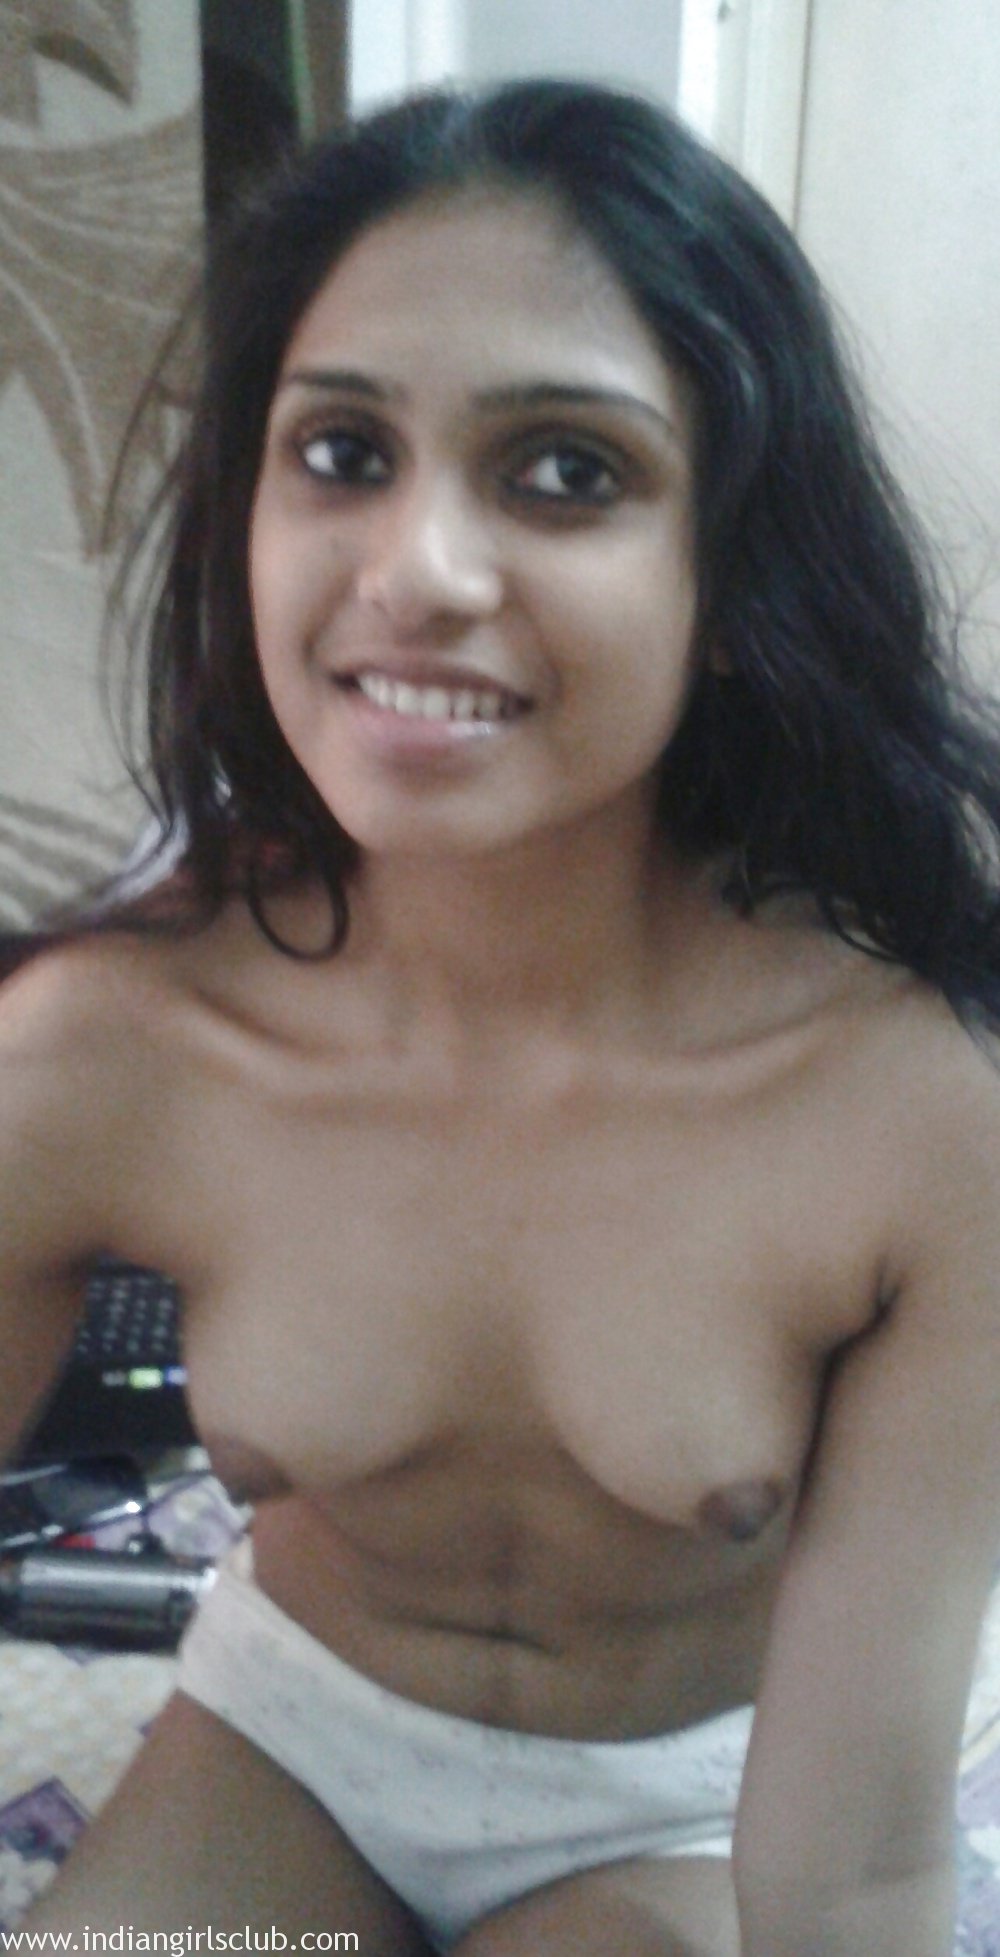 galleries indian girl nude selfie hd